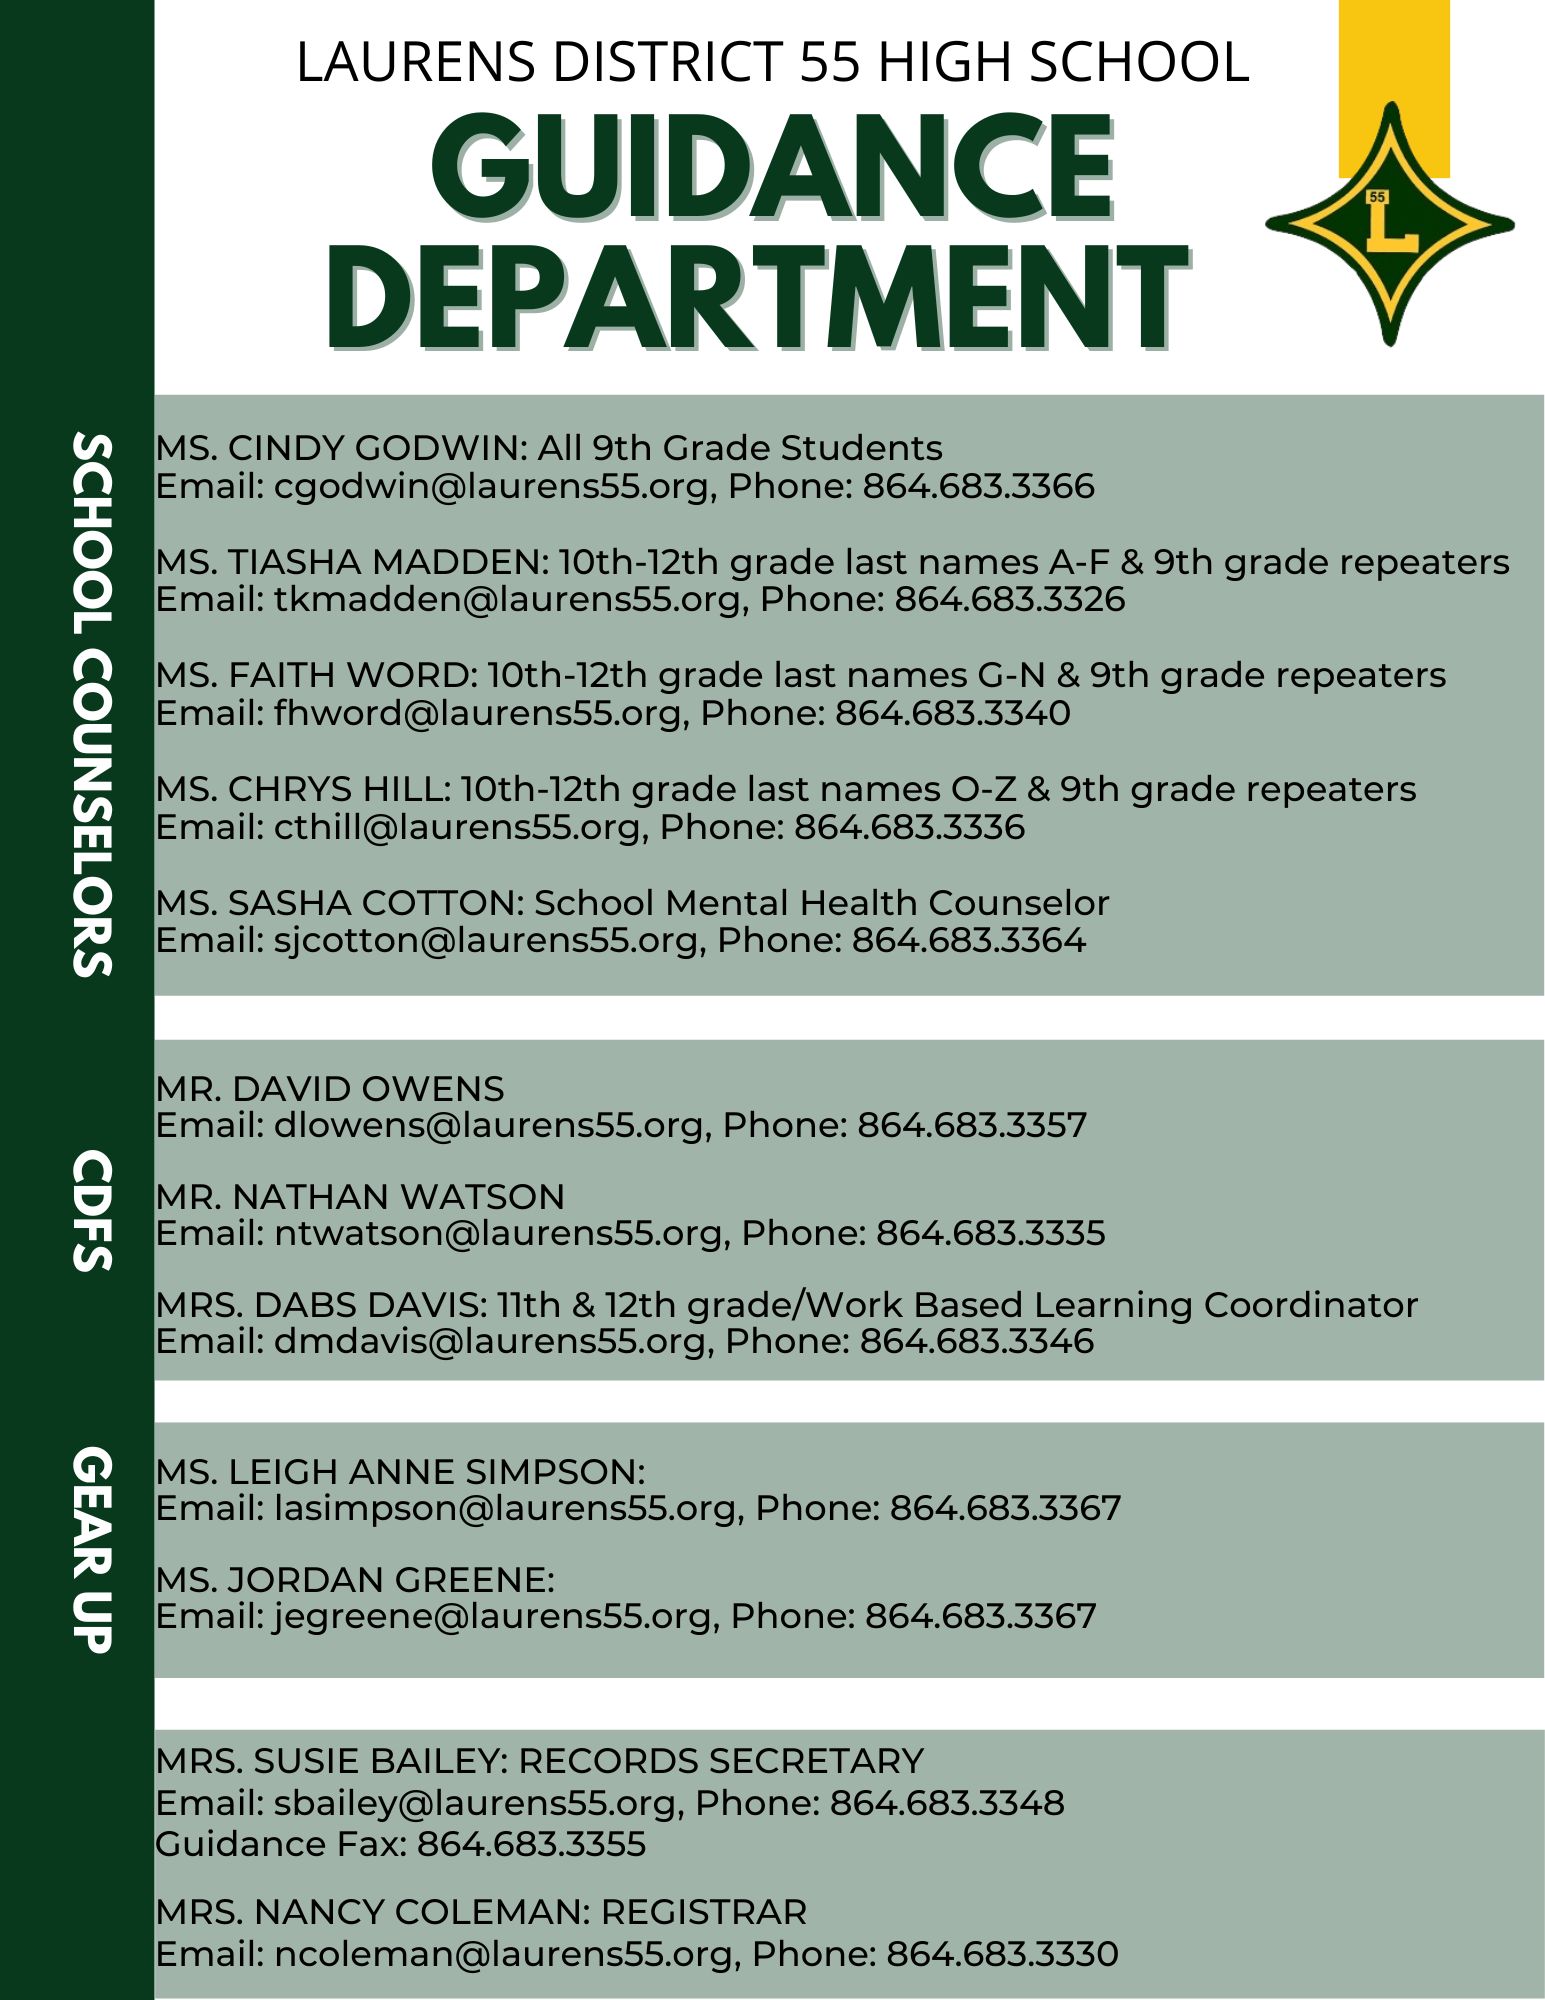 Guidance Department Info